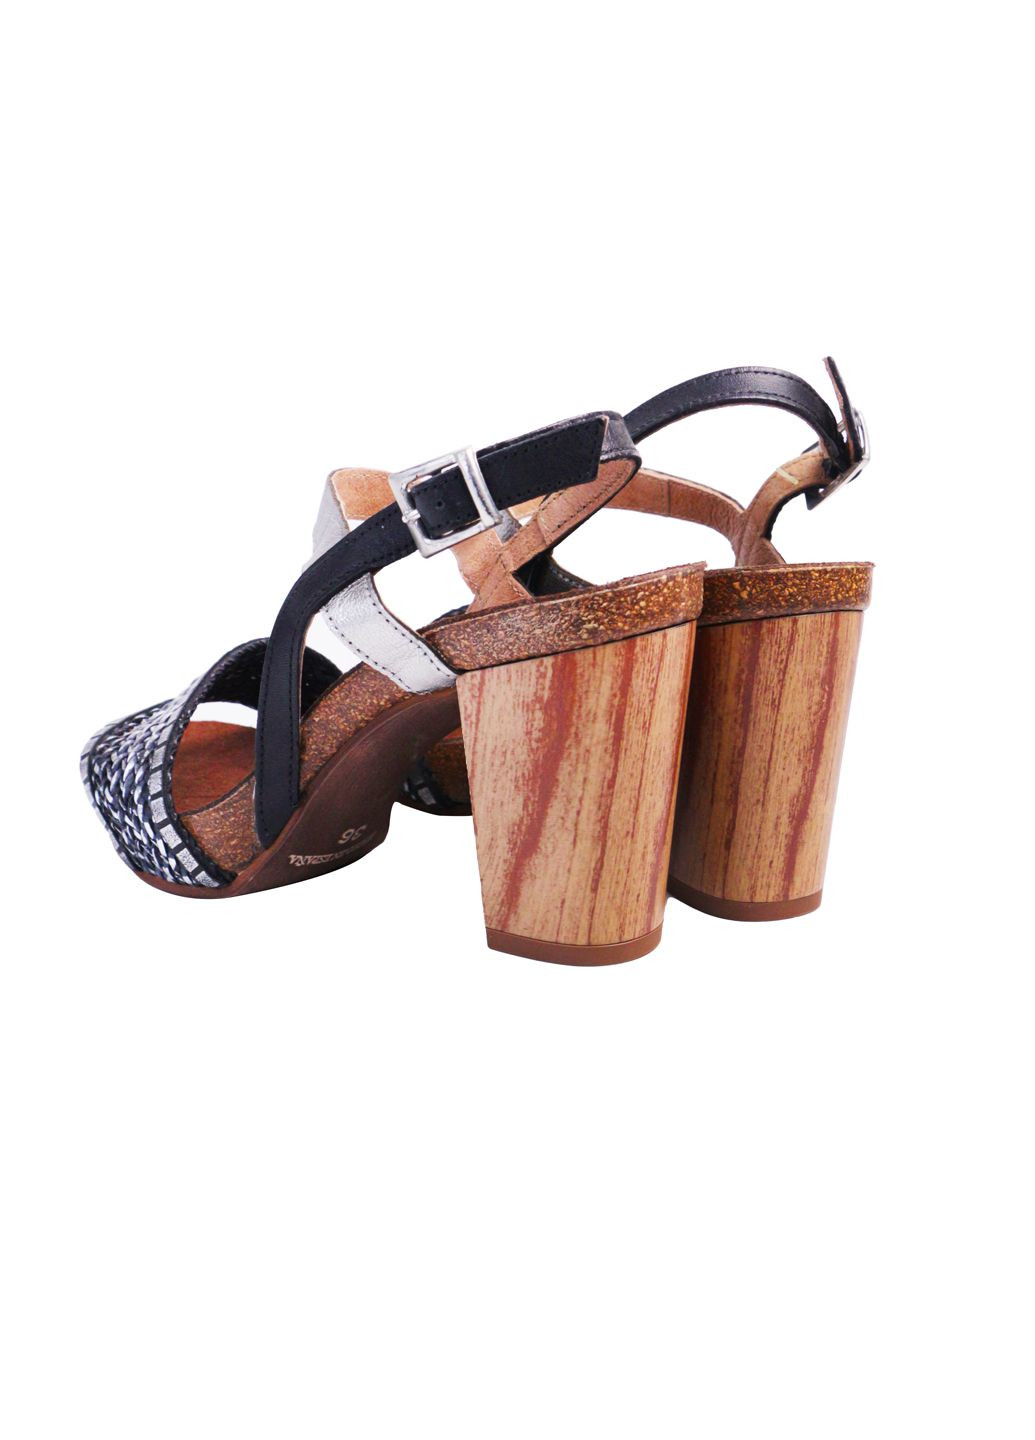 Комбинированные босоножки женские натуральная кожа на устойчивом каблуке 41 черные-серебристые a&d Lidl